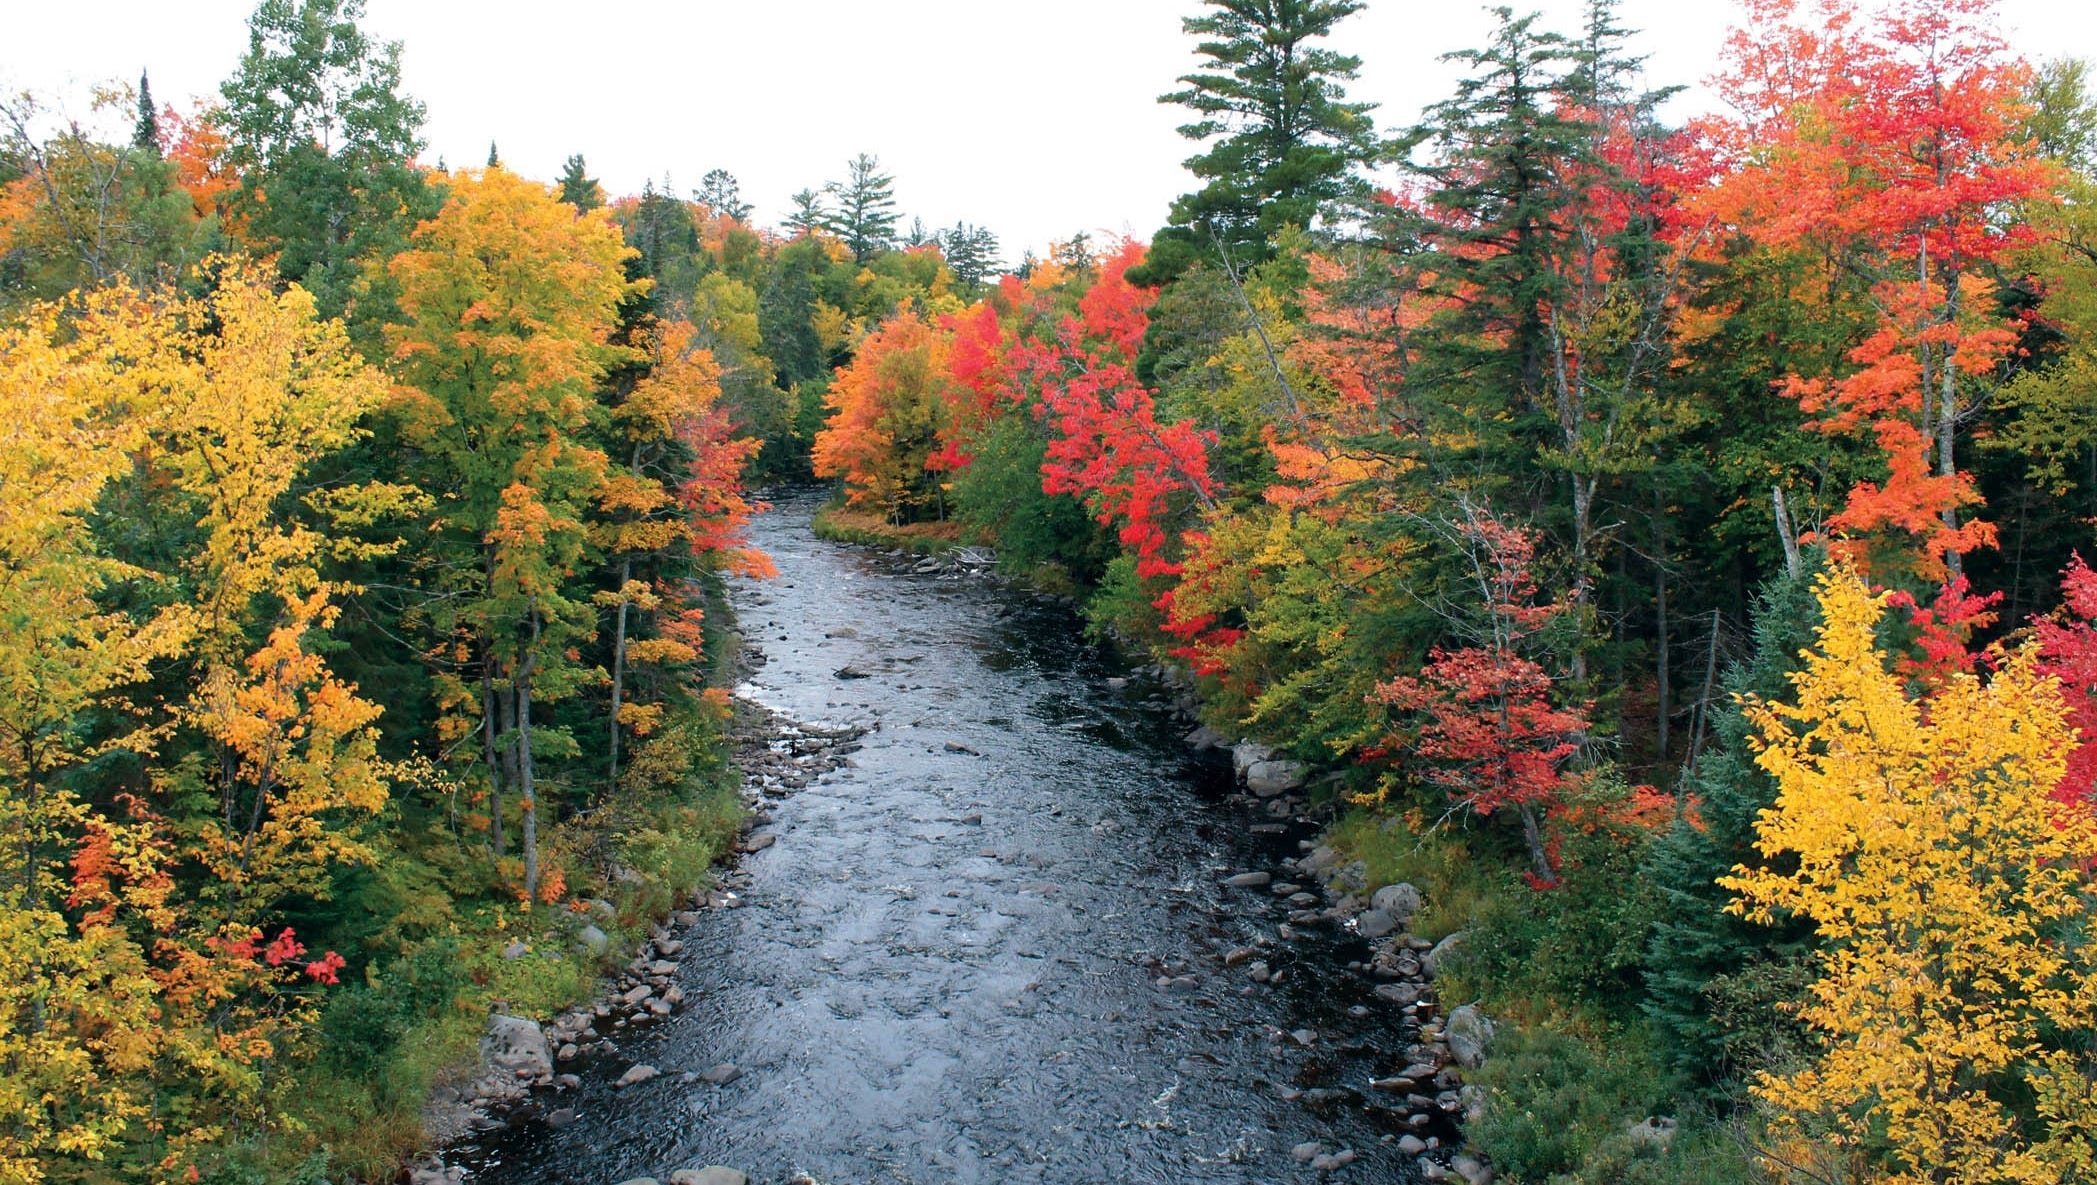 Fall definition. Осень в Канаде. Осенний лес вид сверху. Листопад фото красивые. Осенний лес и дорога и река.